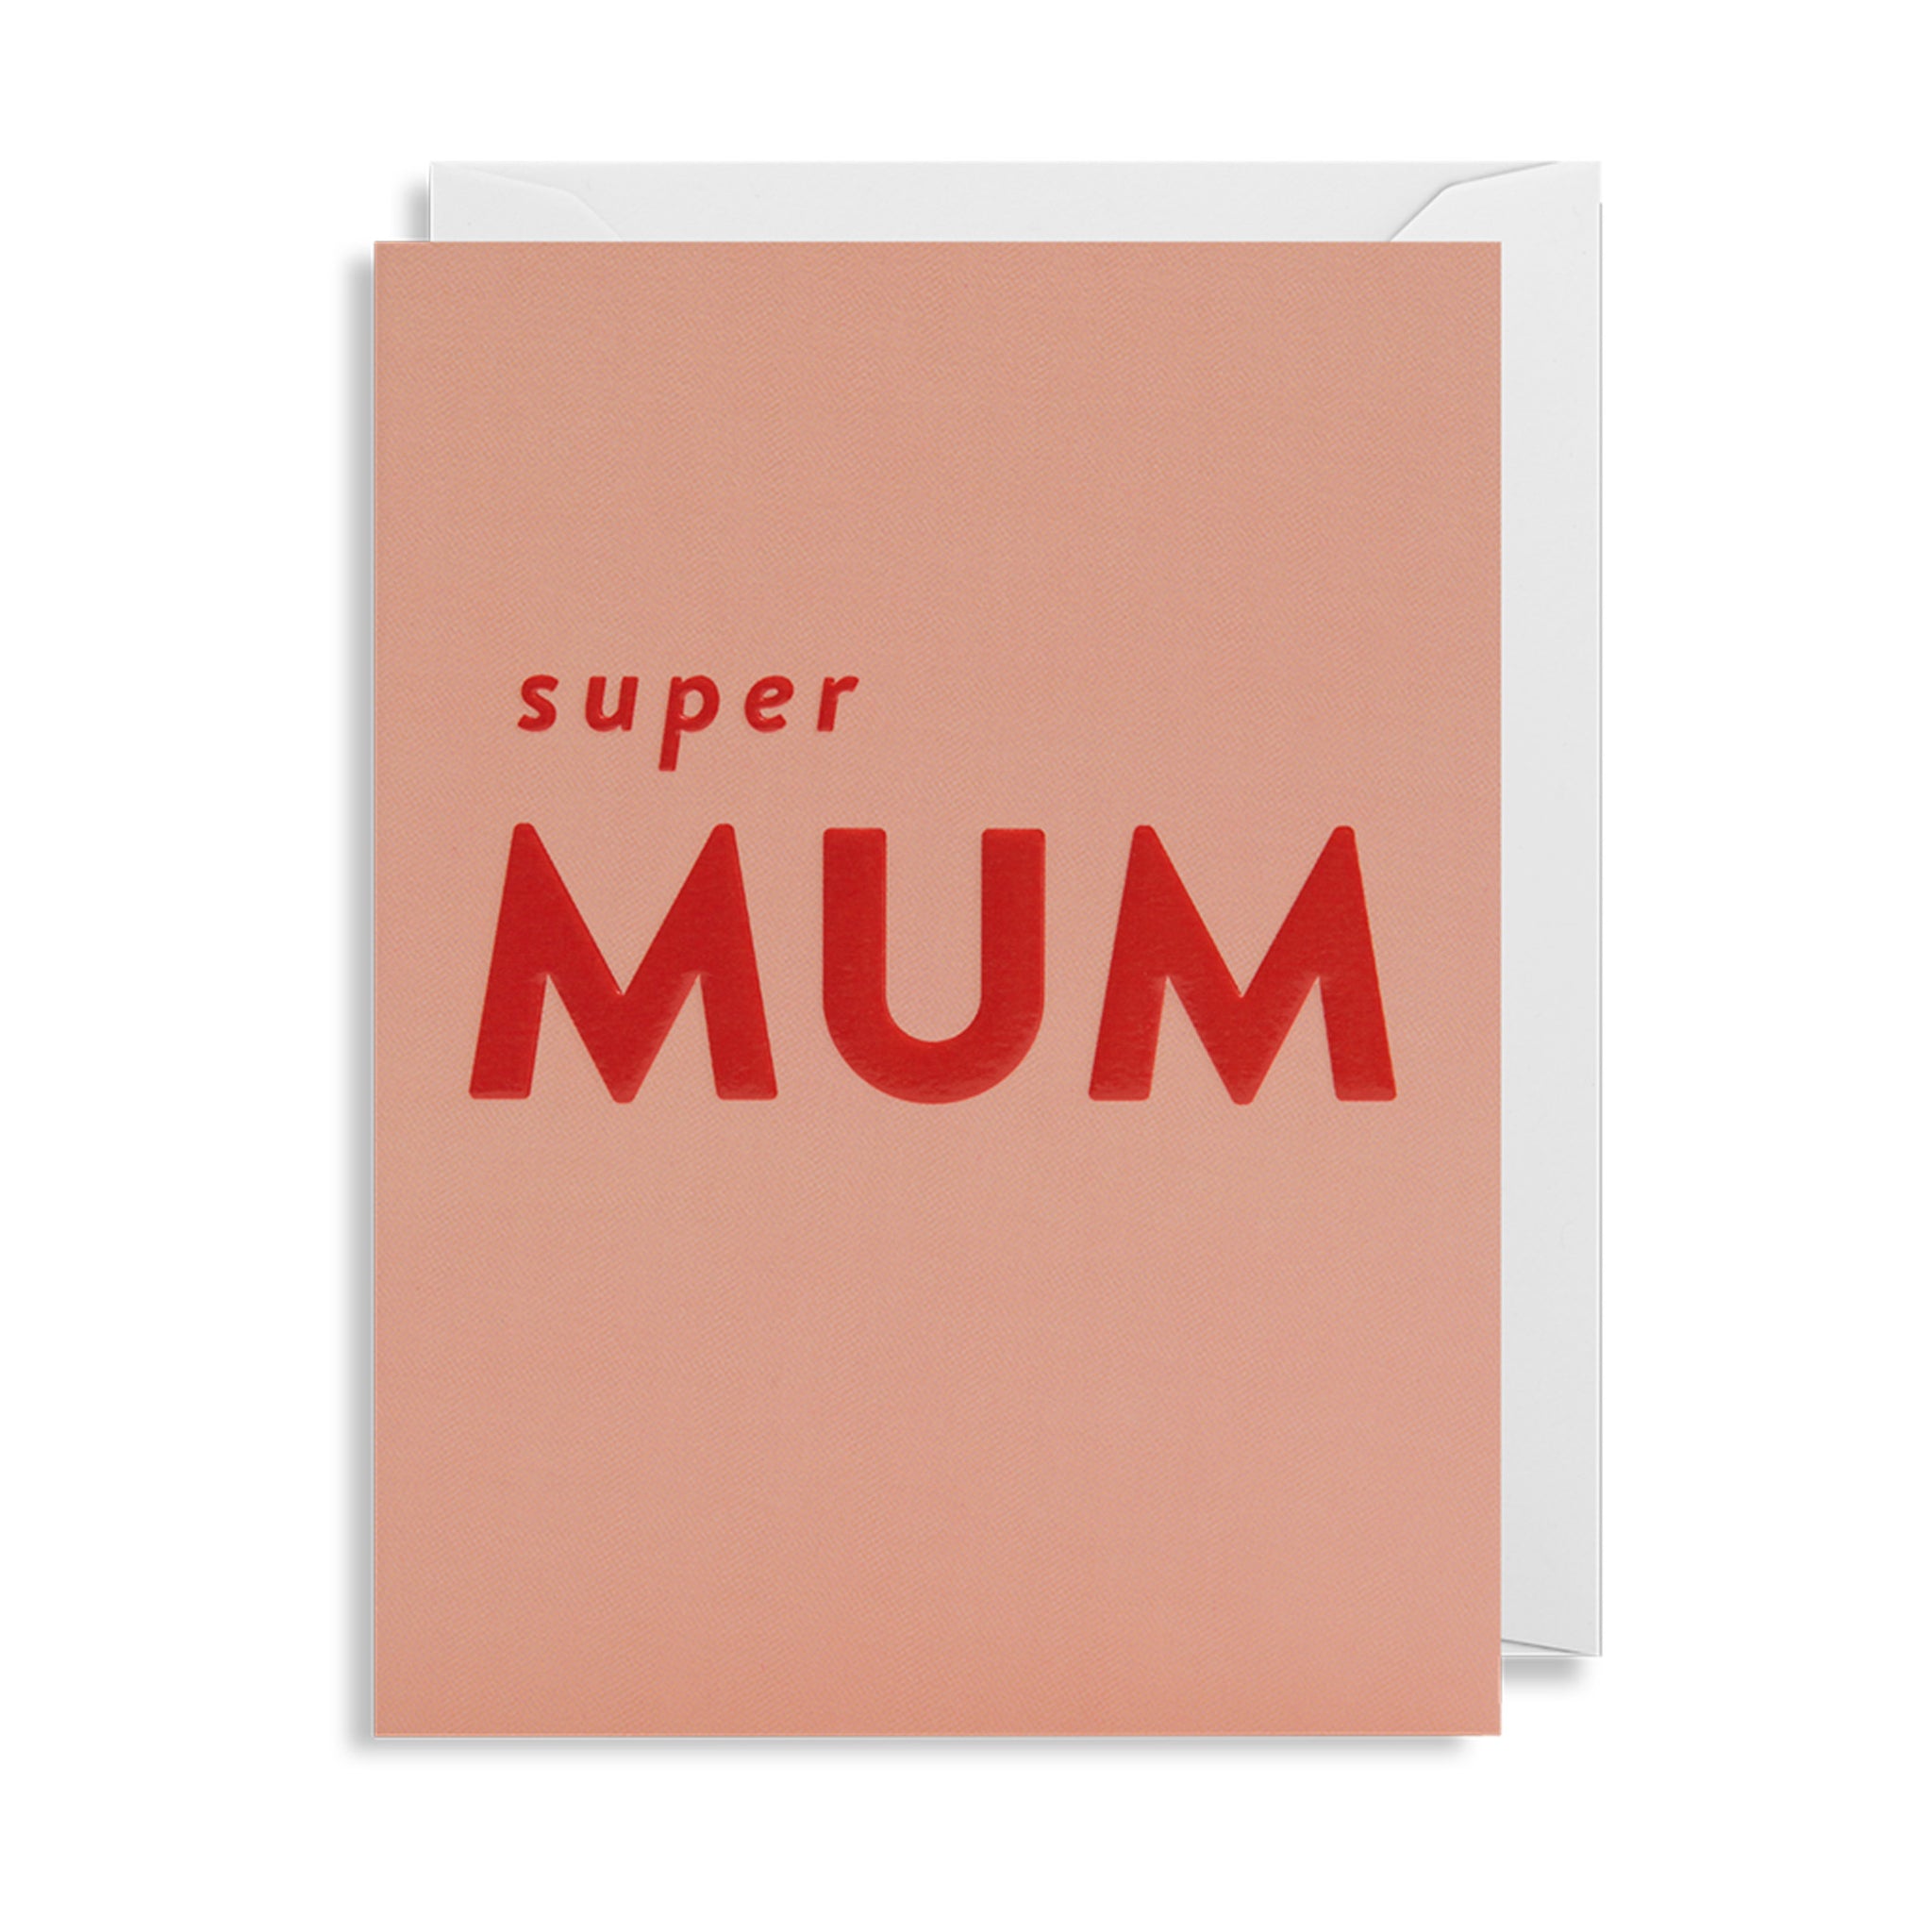 Super Mum - Mini Card - Five And Dime